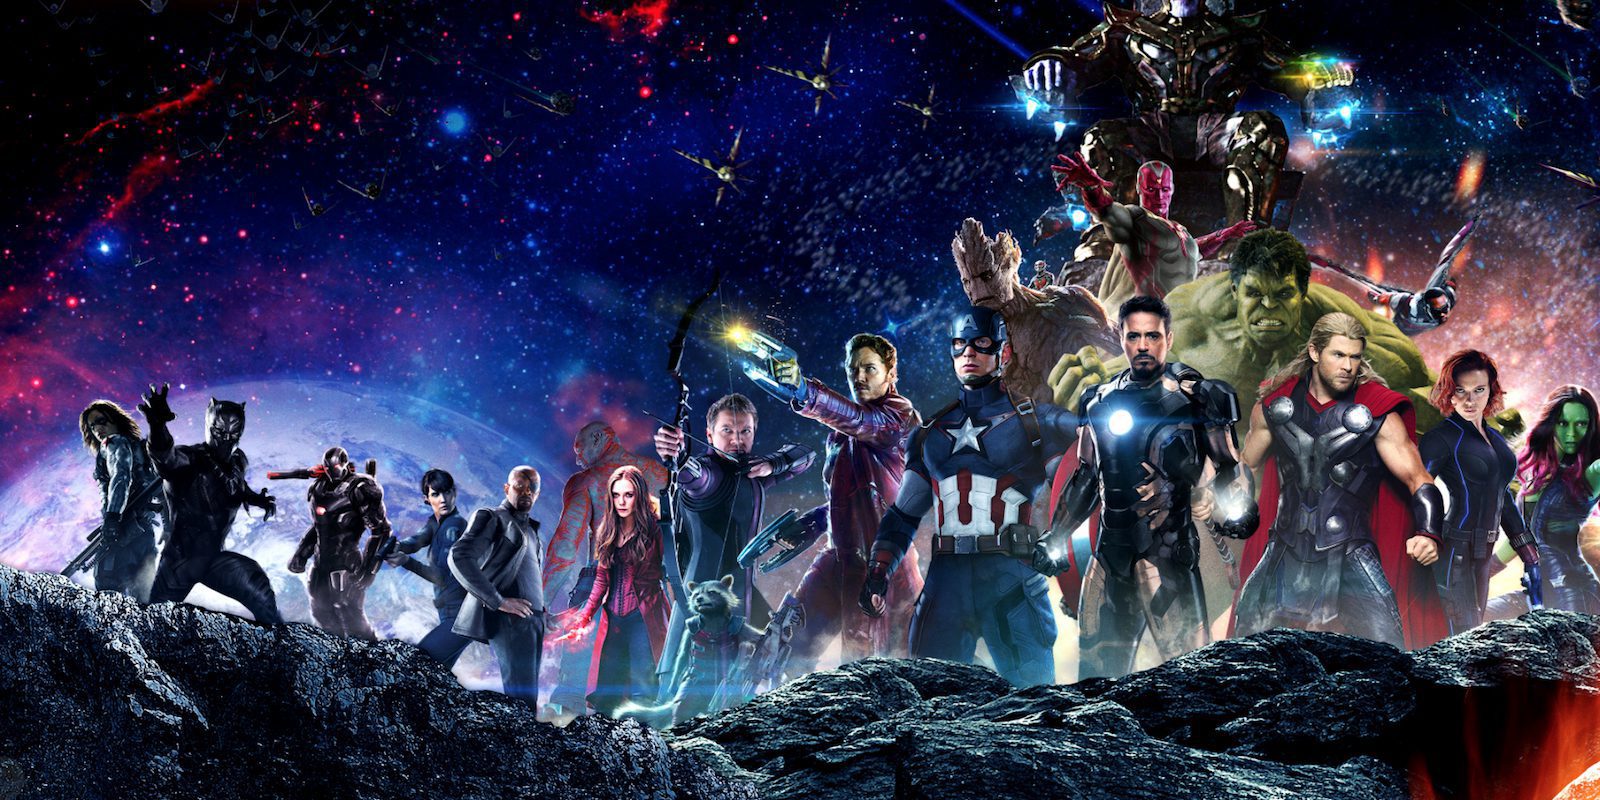 Posible imagen de 'Vengadores: Infinity War' desvelada